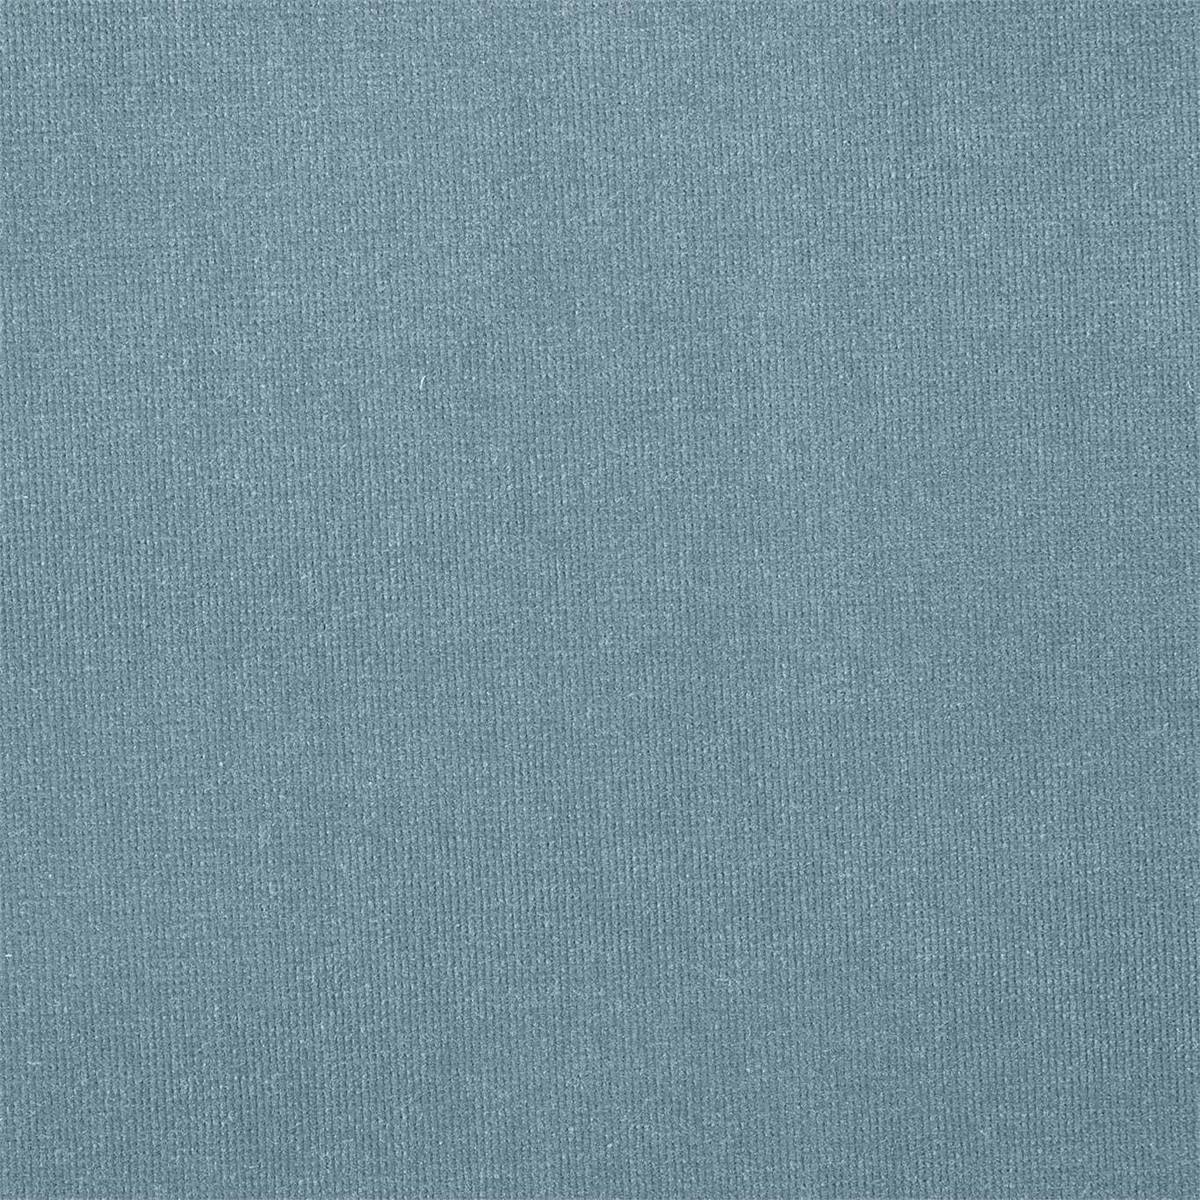 Plush Velvet Cornflower Blue Fabric by Harlequin